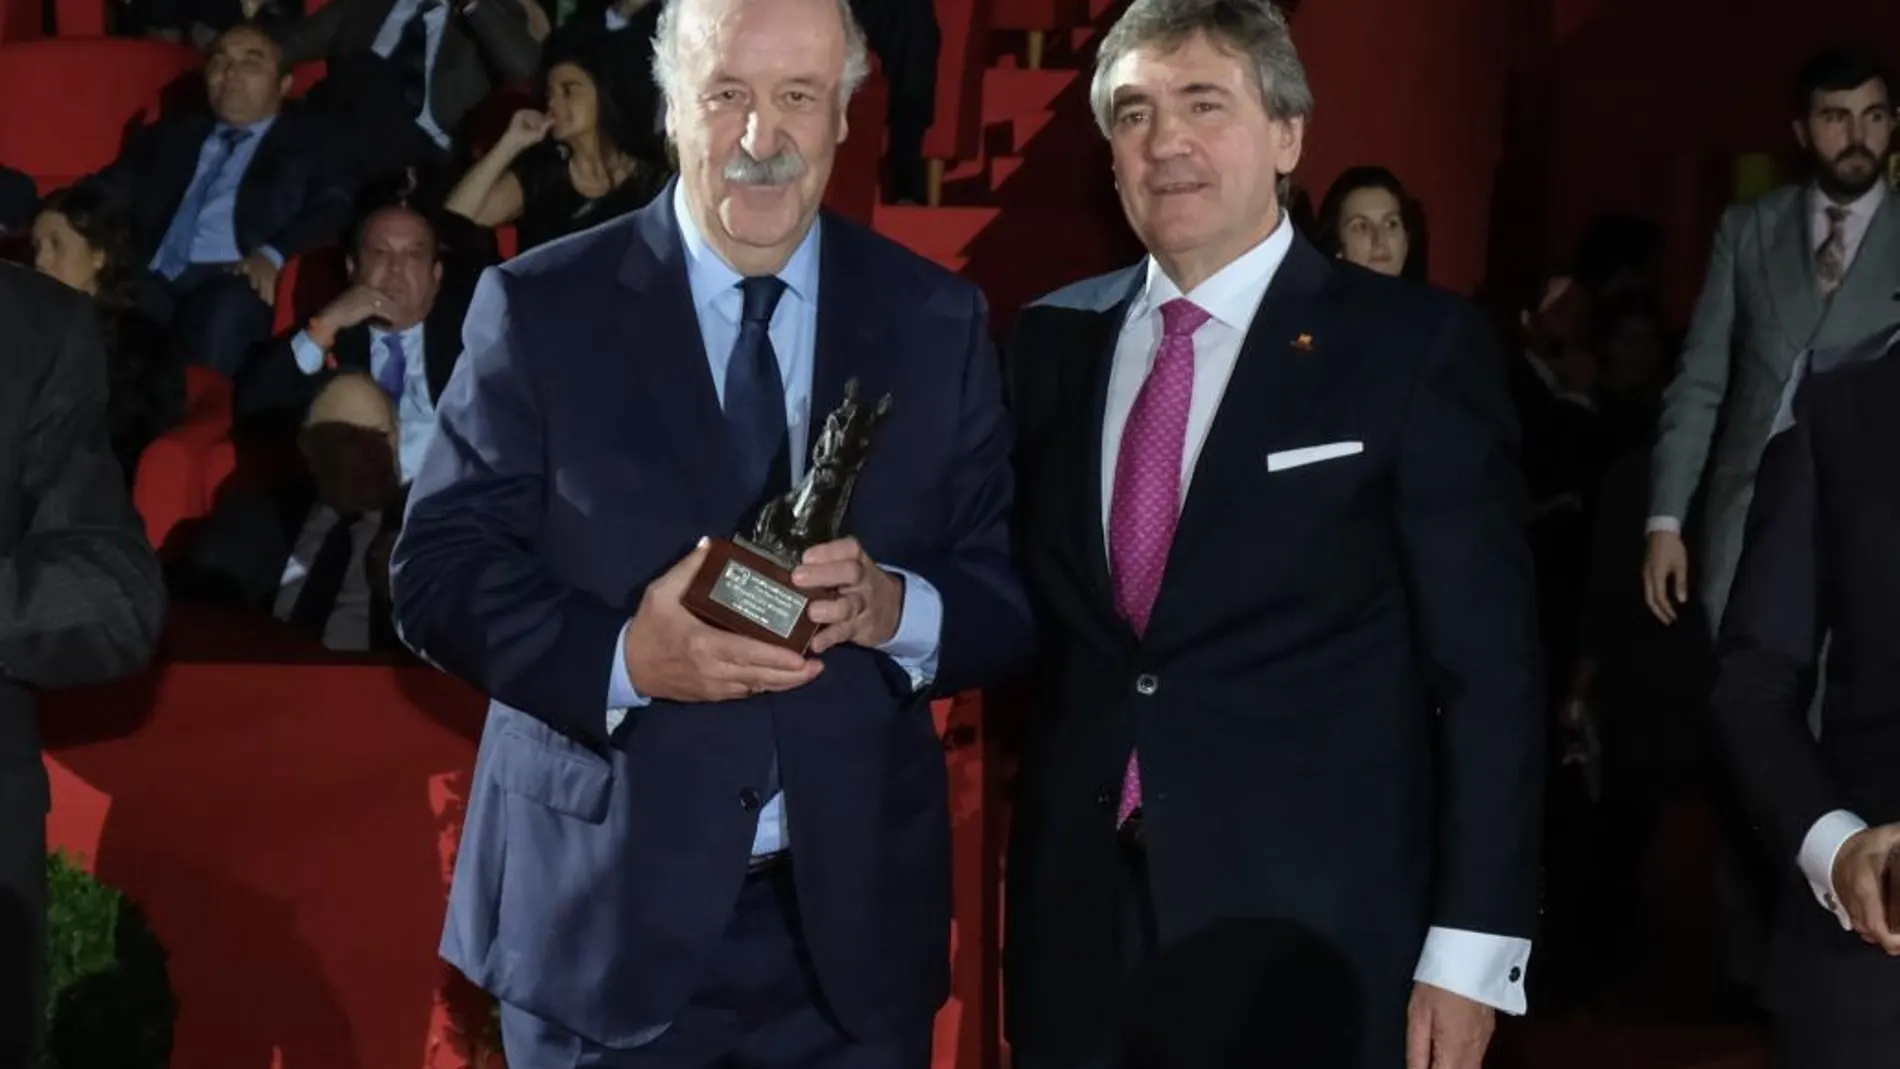 El Premio PRE, Pura Raza Española, distingue en Sicab a Unicef, Vicente del Bosque, Ángel Expósito y Ángel León